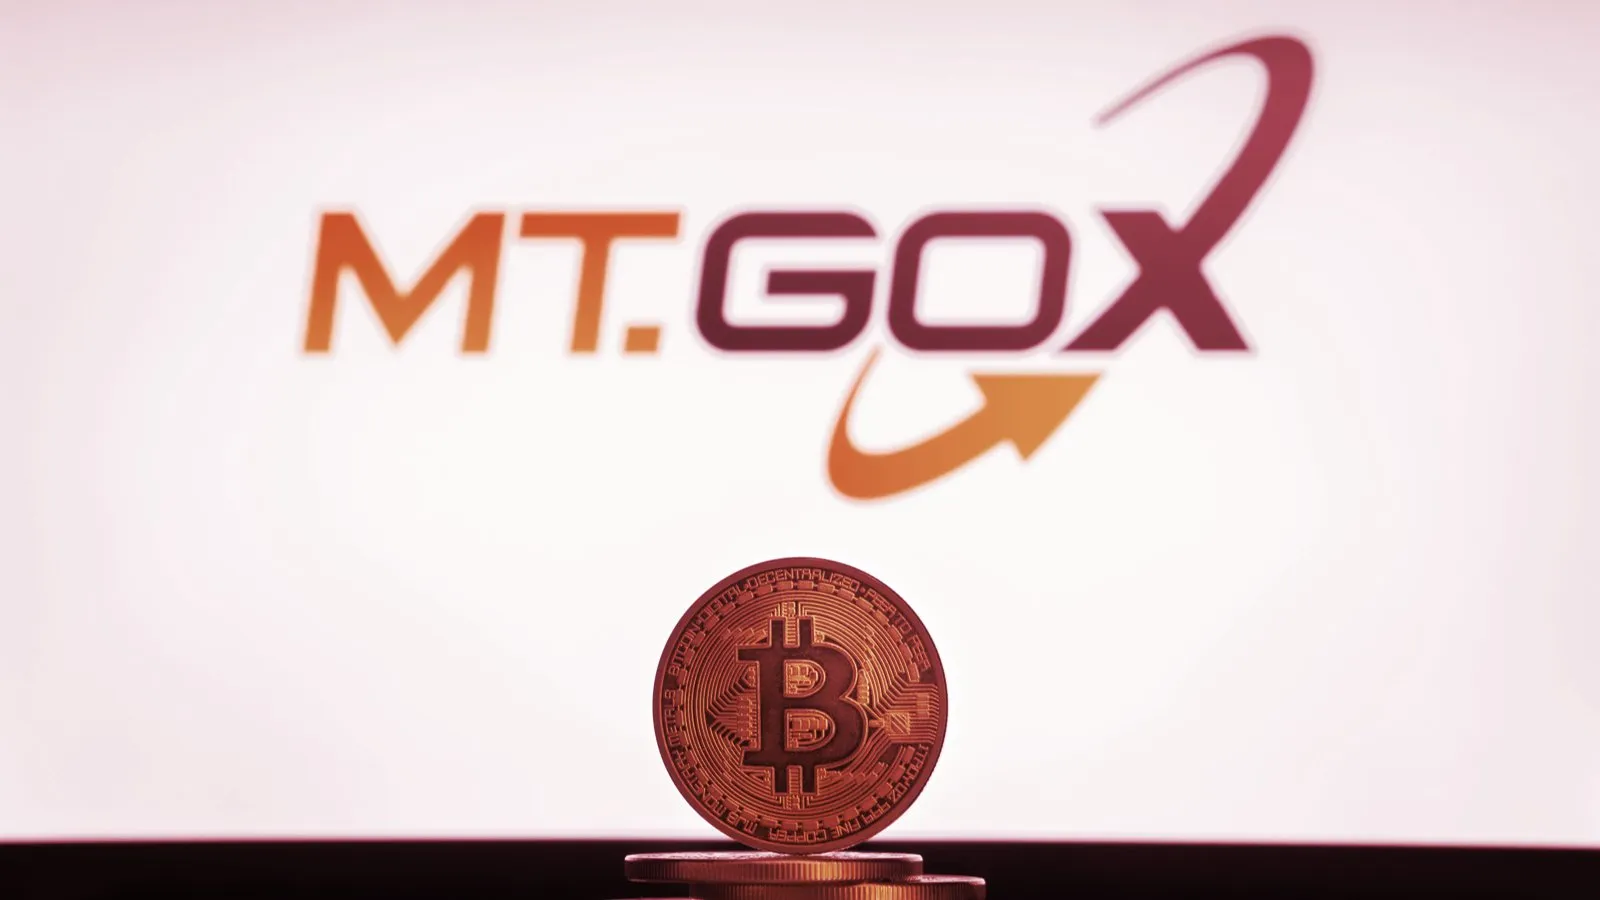 Mt. Gox fue una de las principales bolsas de criptomonedas. Imagen: Shutterstock